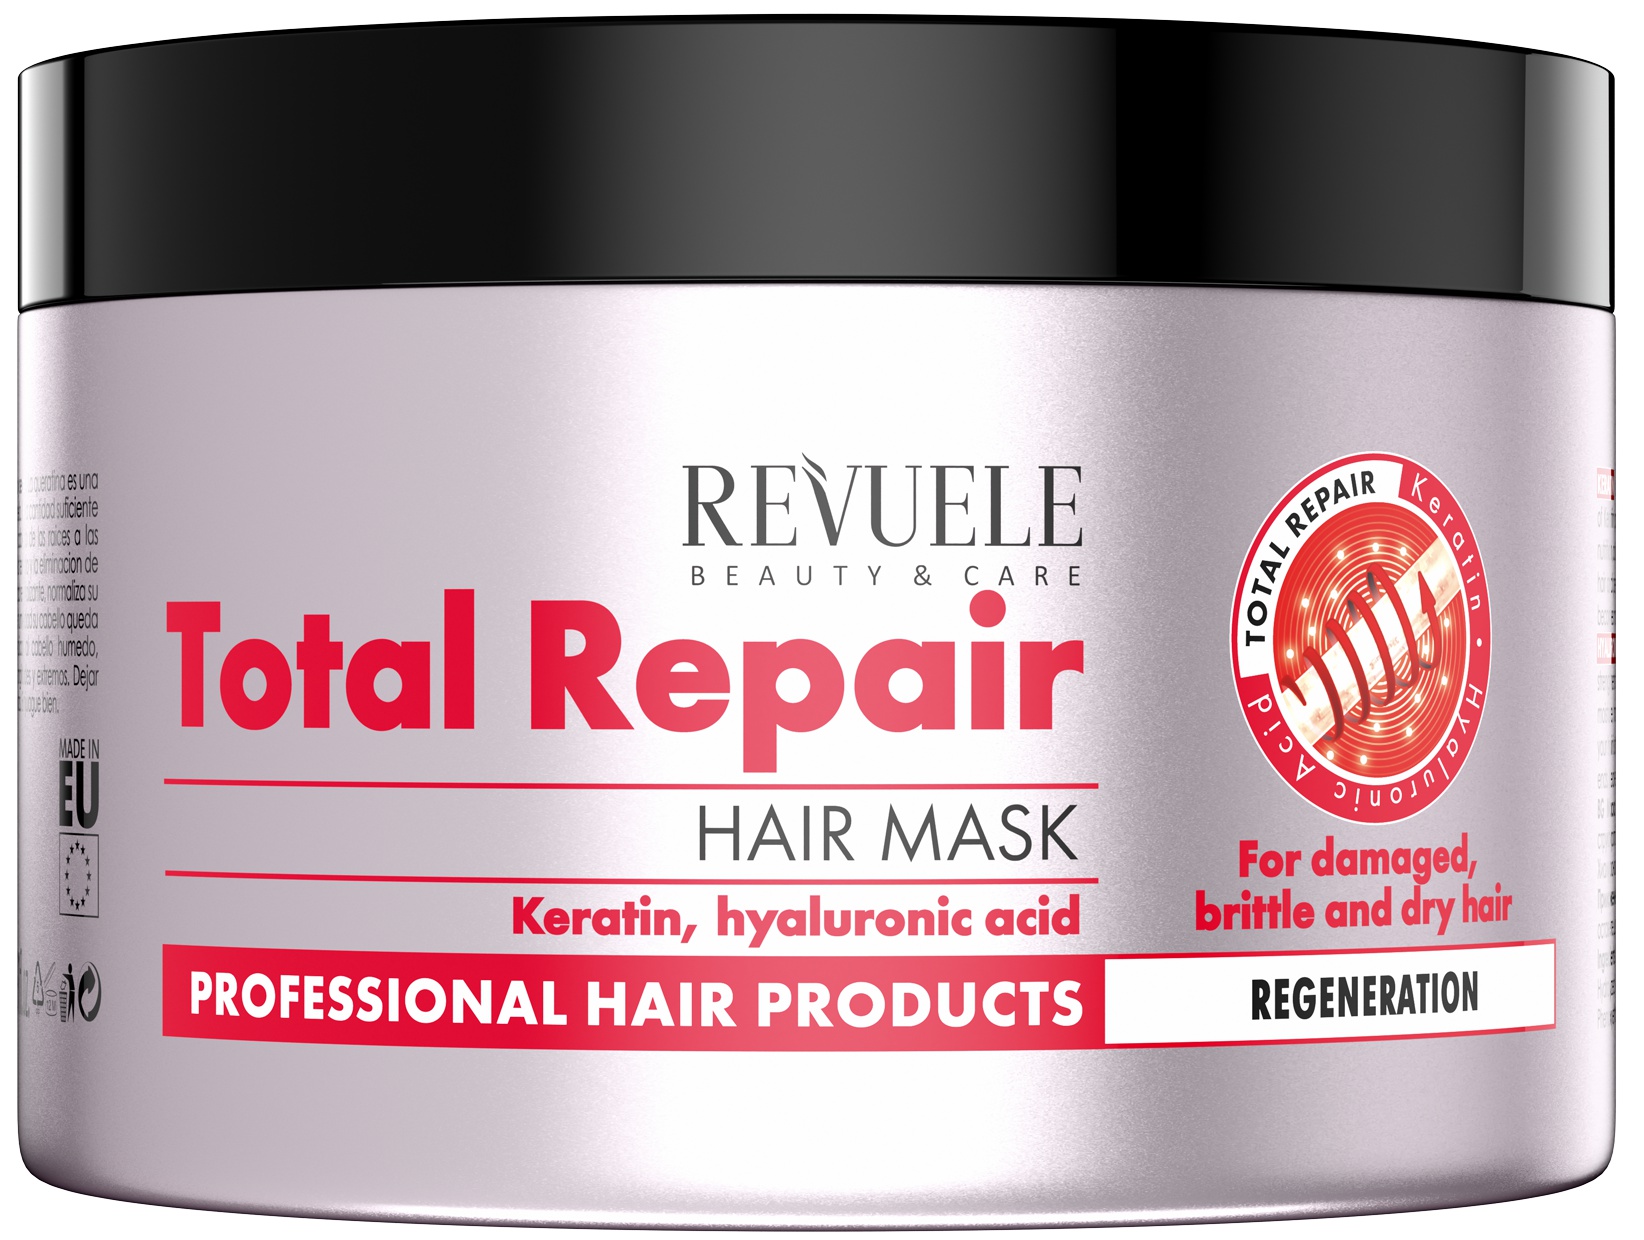 Revuele Total Repair Hair Mask